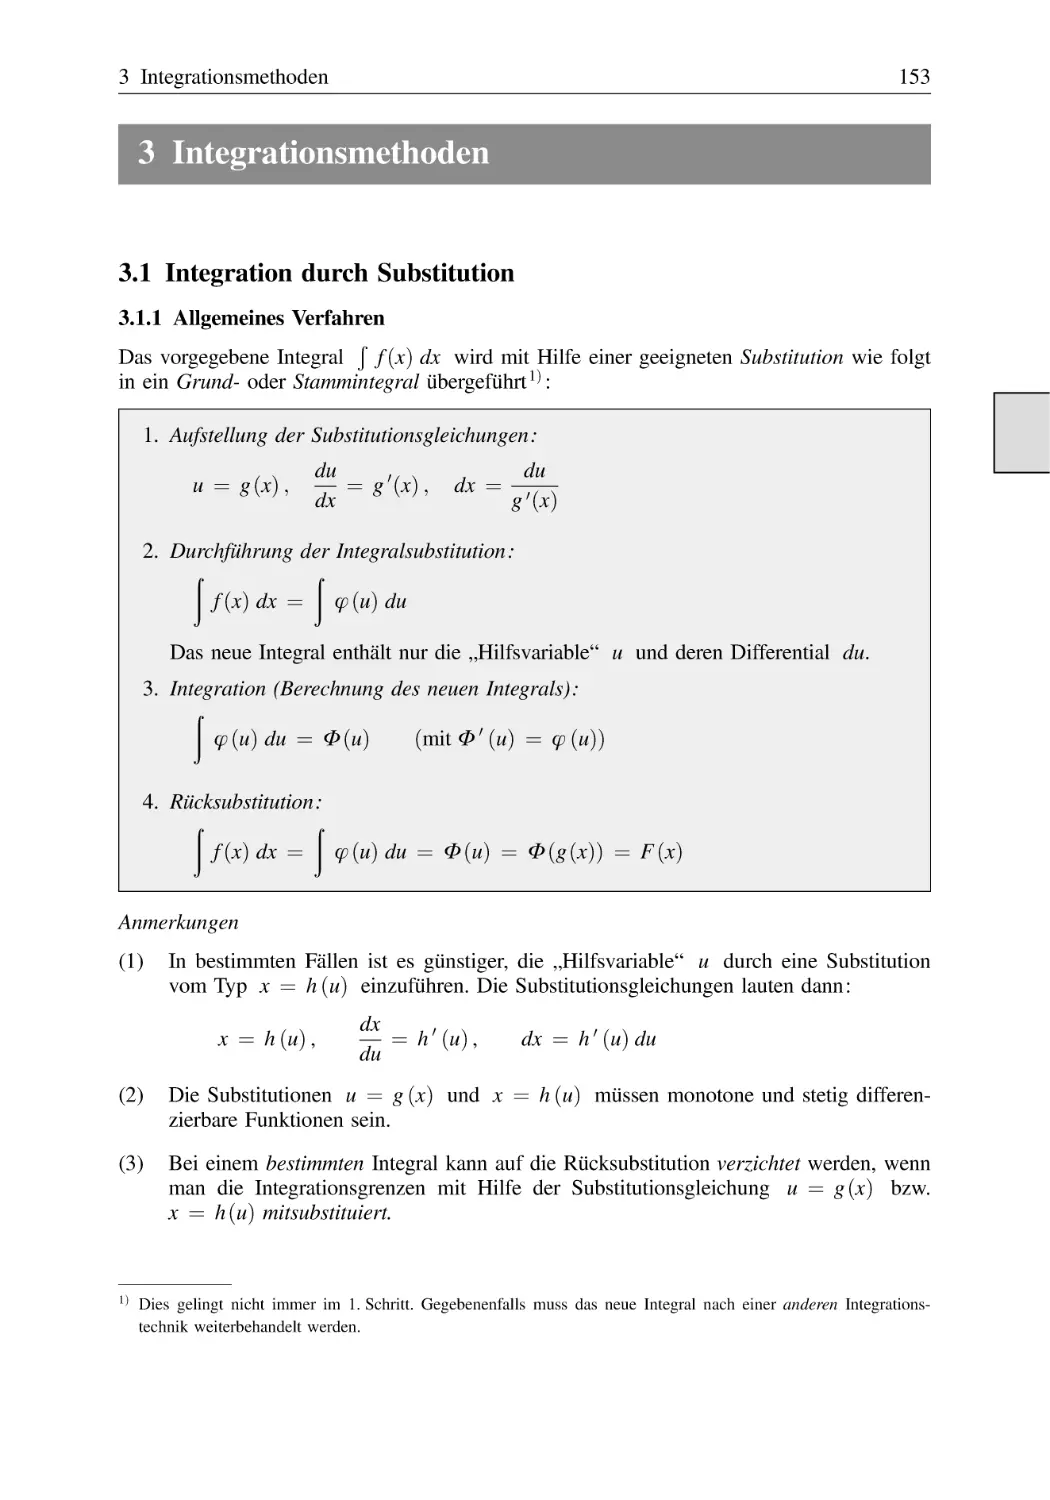 3 Integrationsmethoden
3.1 Integration durch Substitution
3.1.1 Allgemeines Verfahren